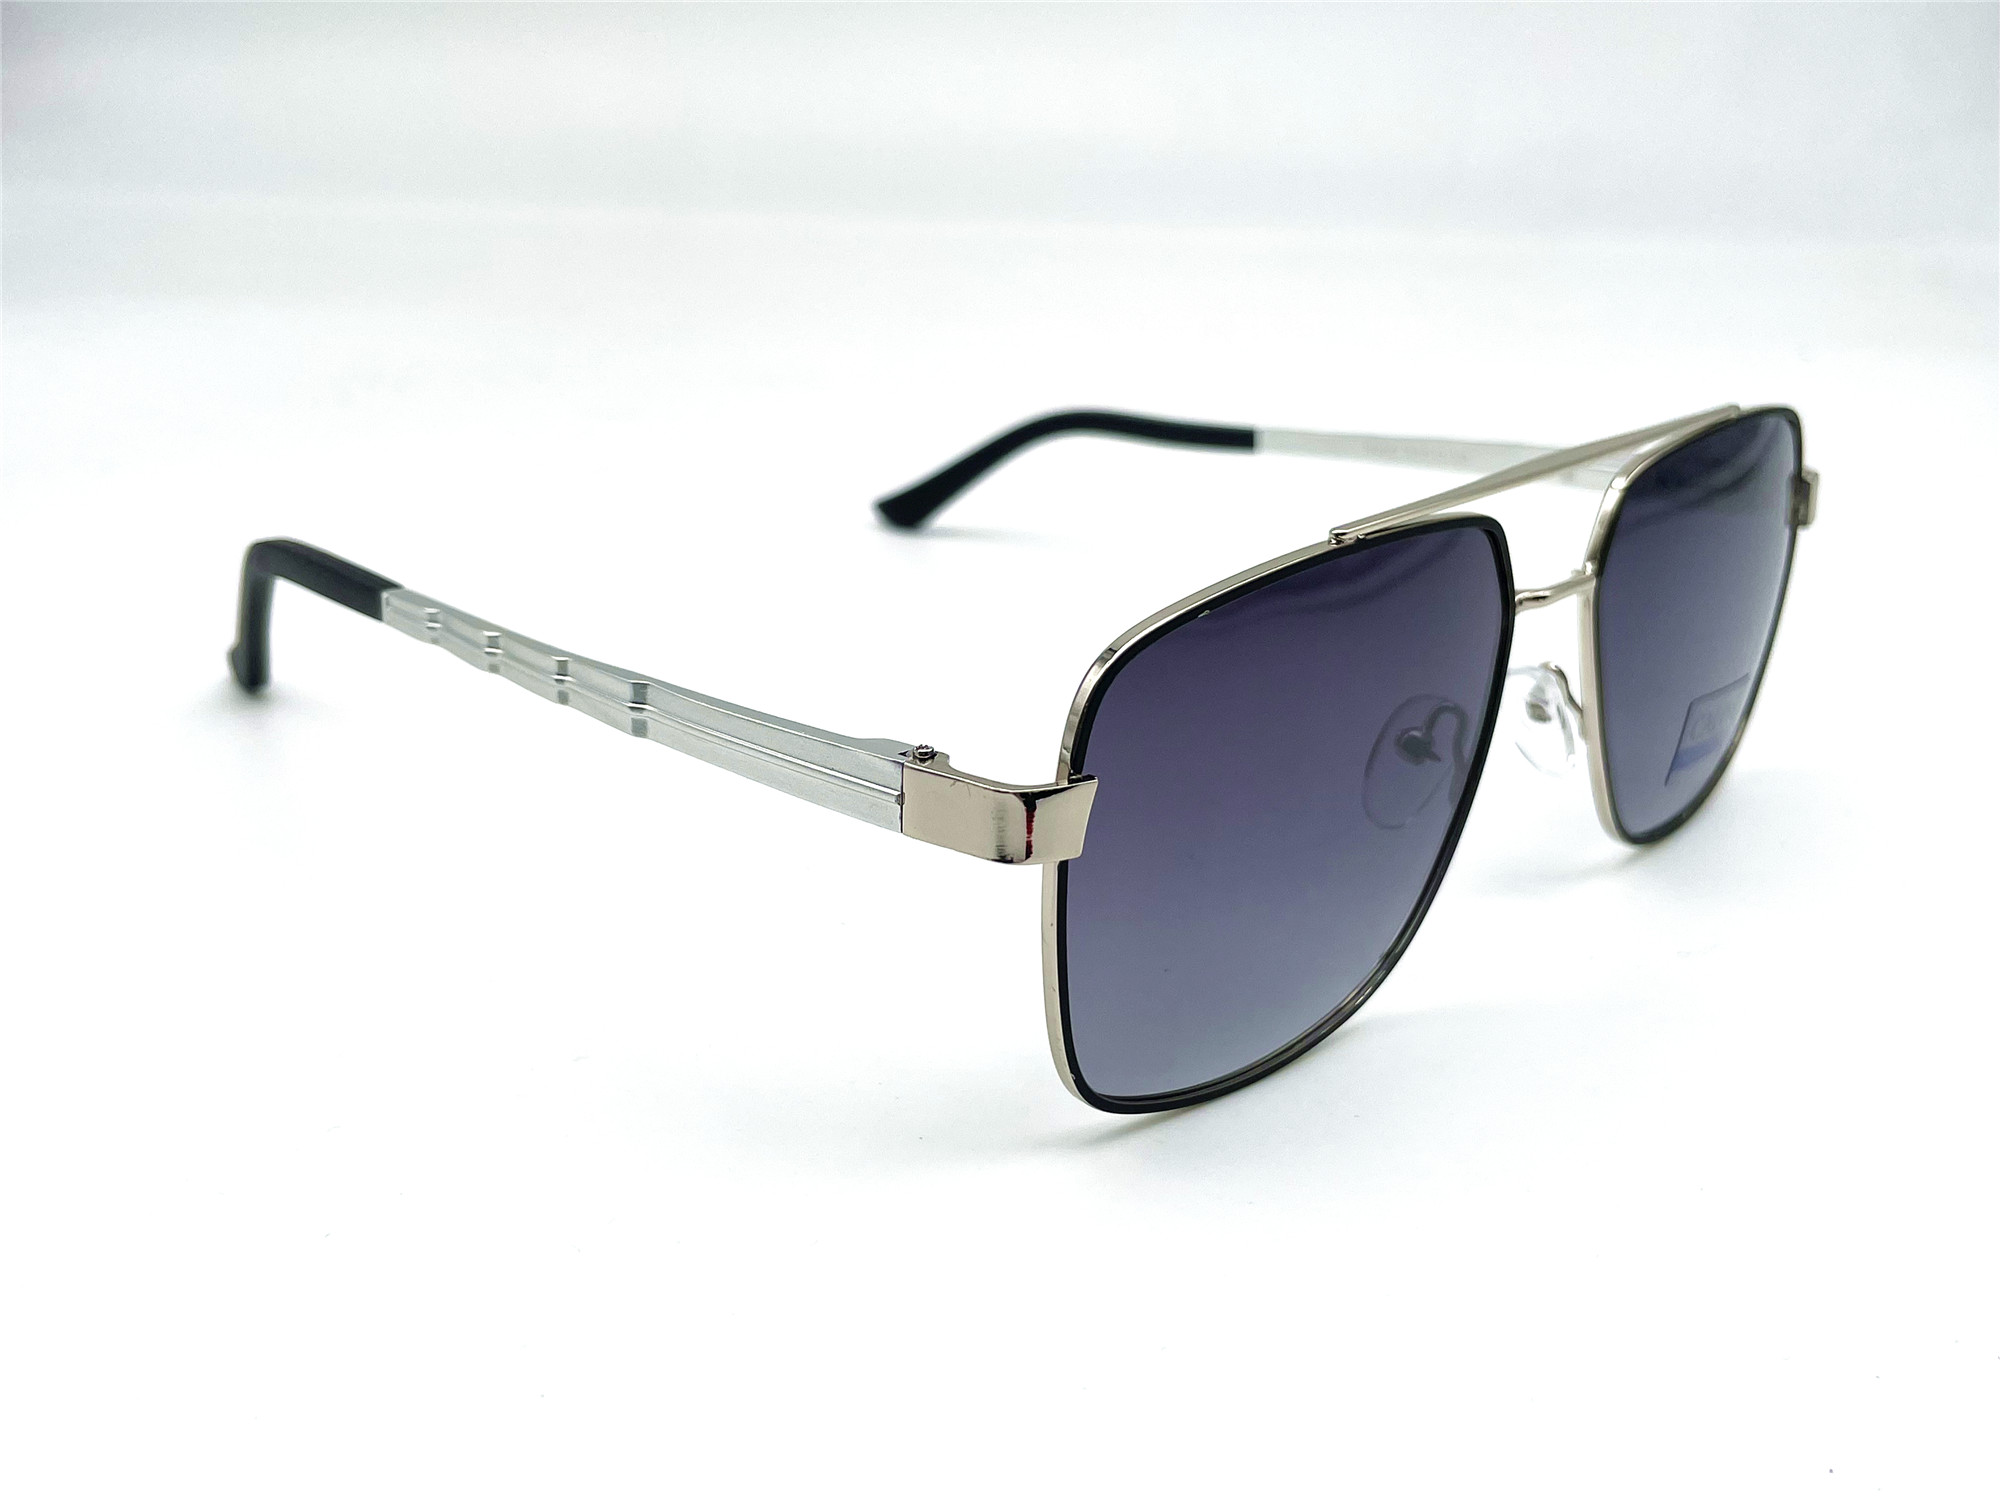  Солнцезащитные очки картинка Мужские Caipai Polarized Квадратные P4002-С3 